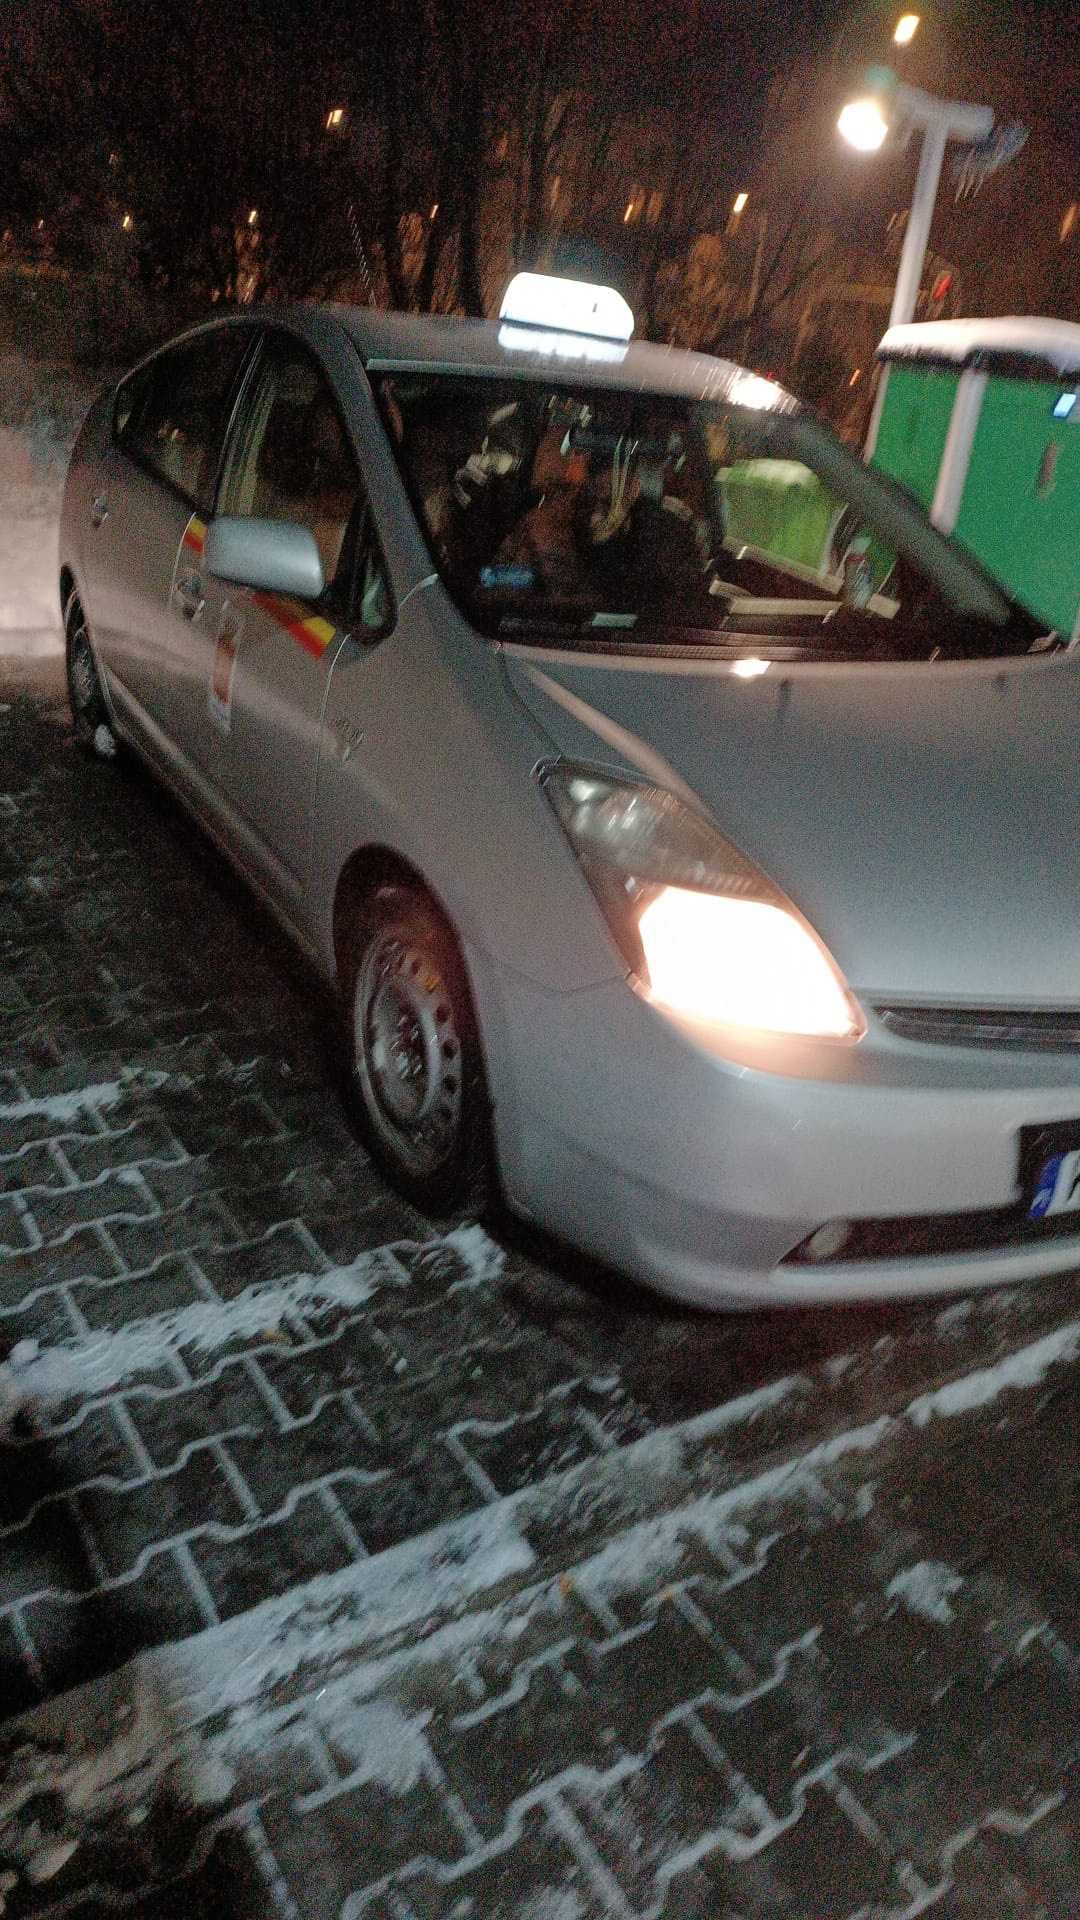 Wynajem aut Warszawa Toyoty z gazem i licencjami Taxi Uber Bolt …